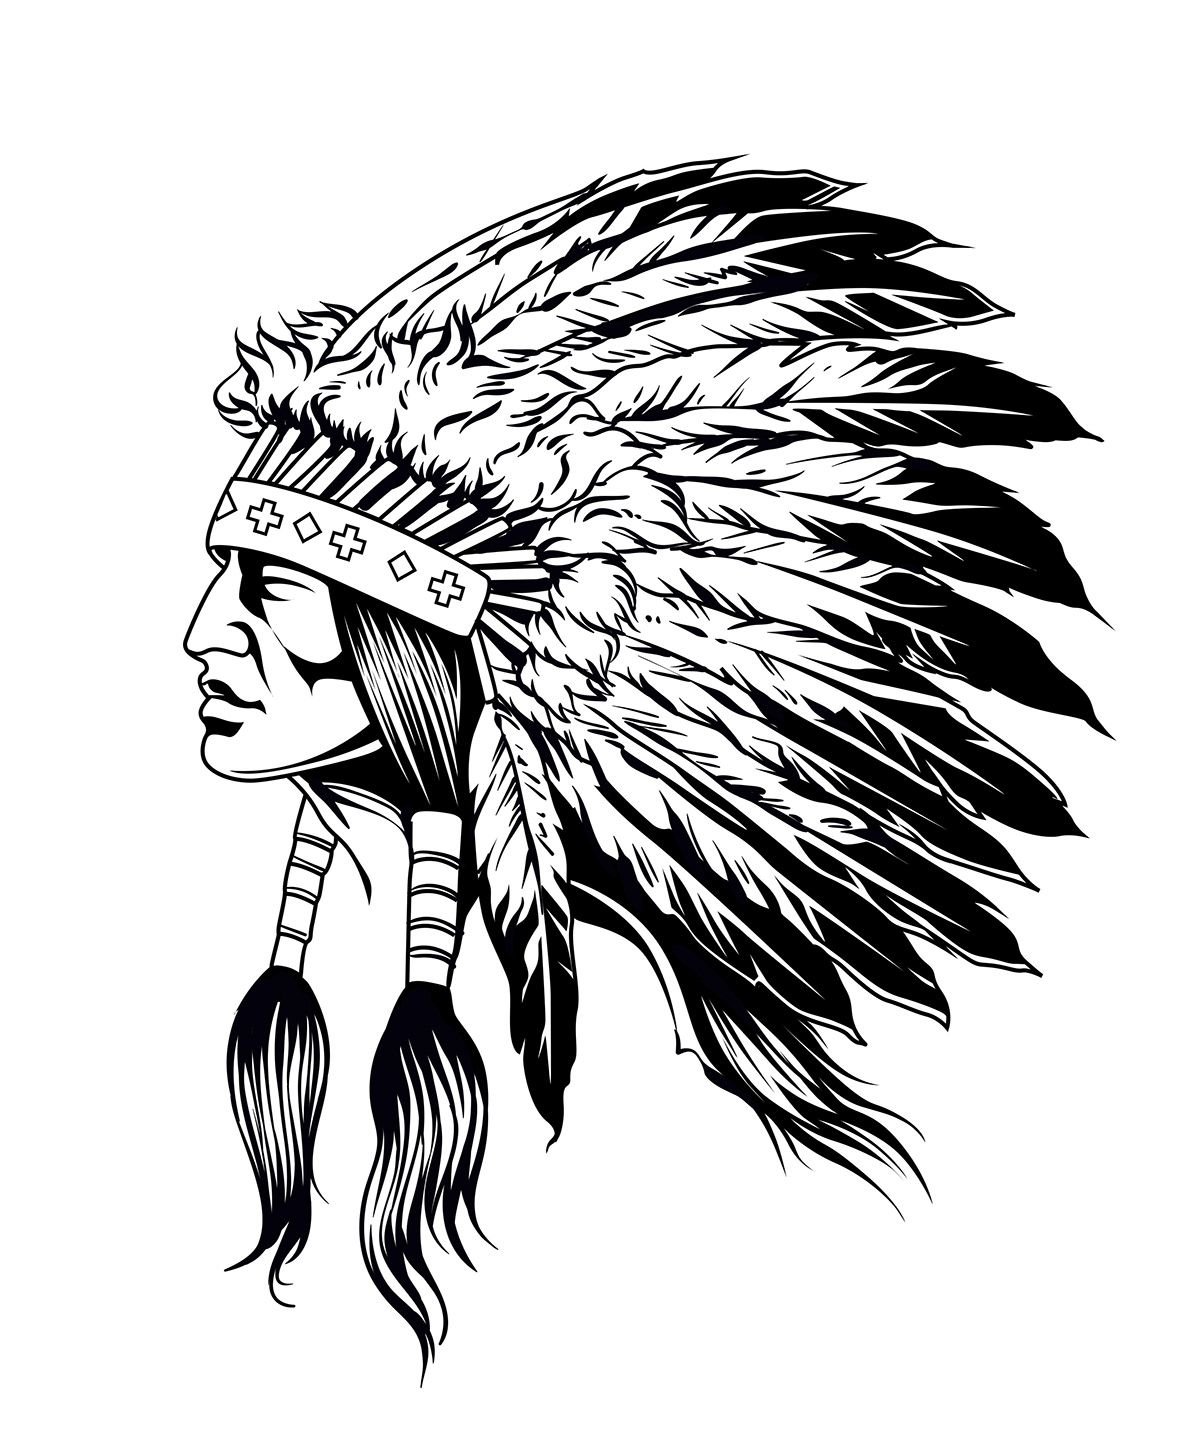 Любимая пытка ирокезов и прадед Обамы: 5 самых крутых индейских племен